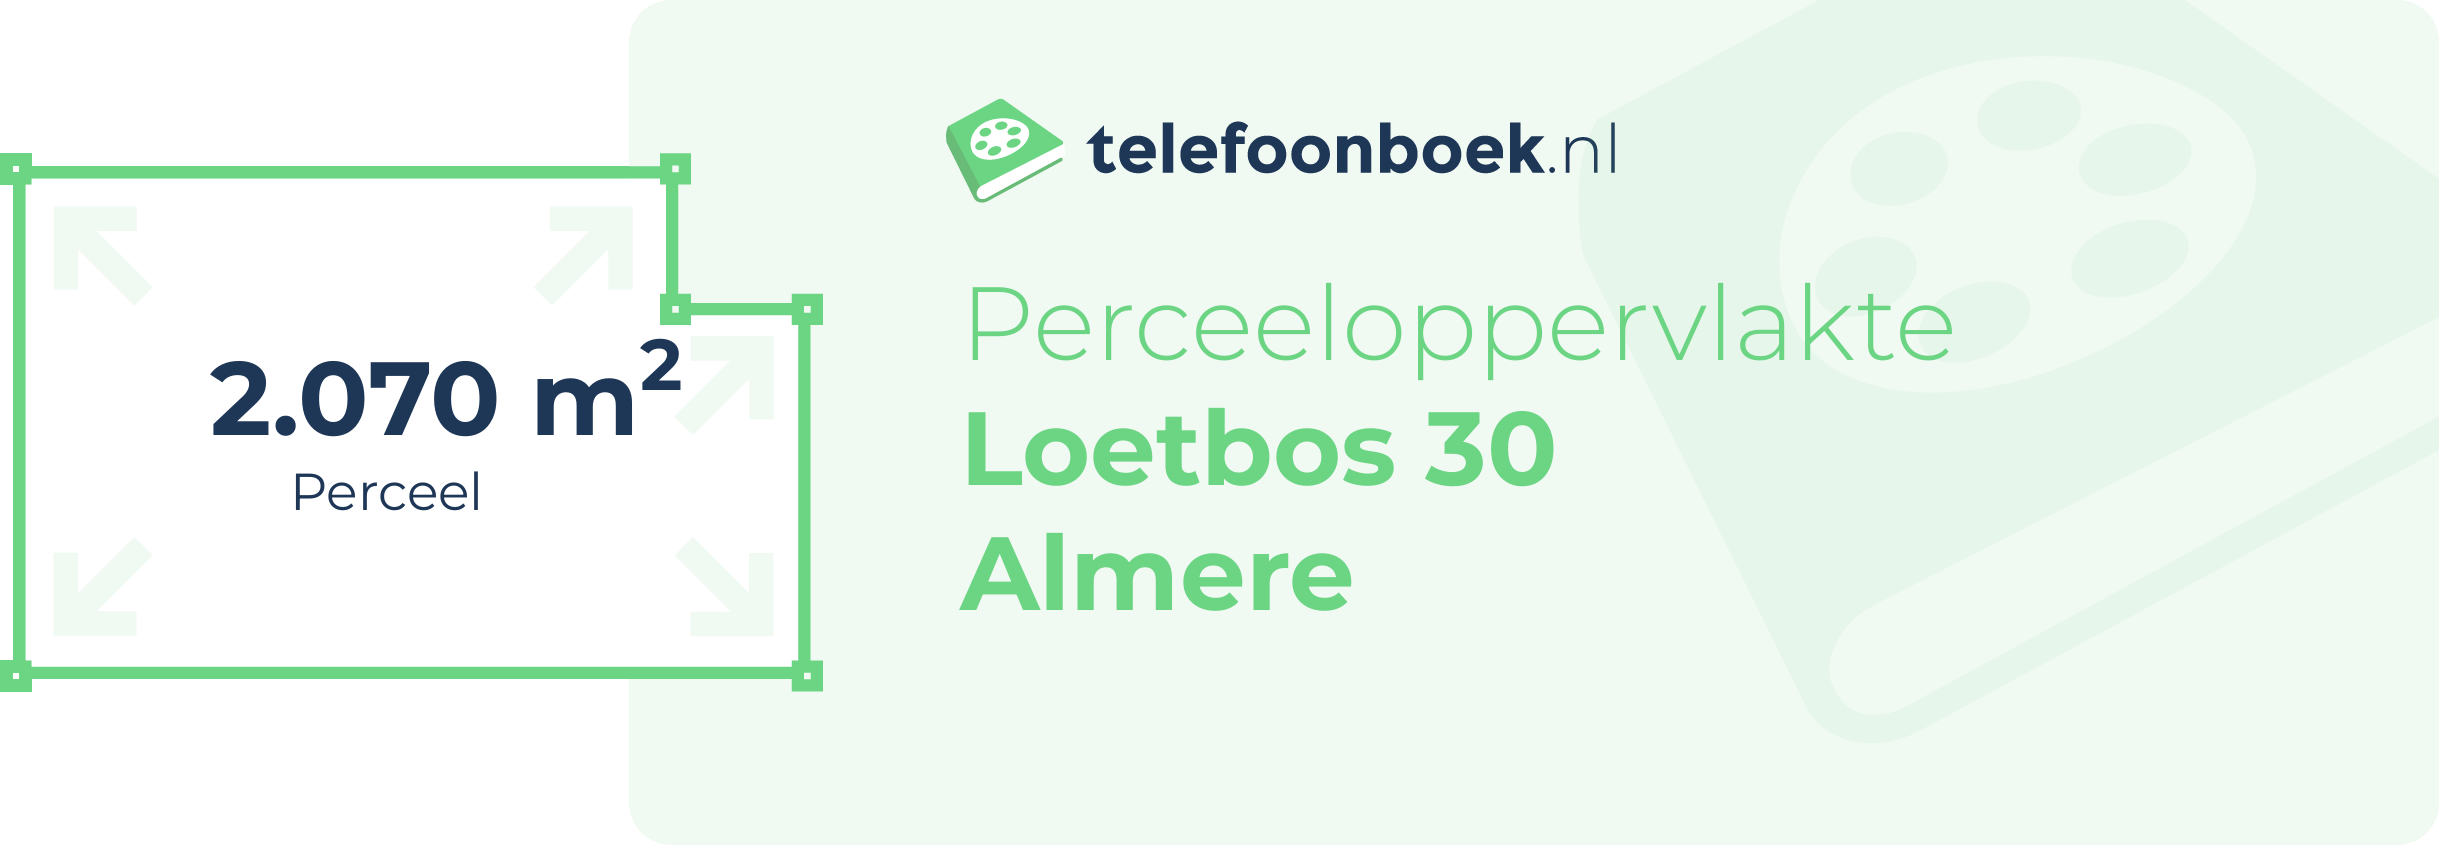 Perceeloppervlakte Loetbos 30 Almere